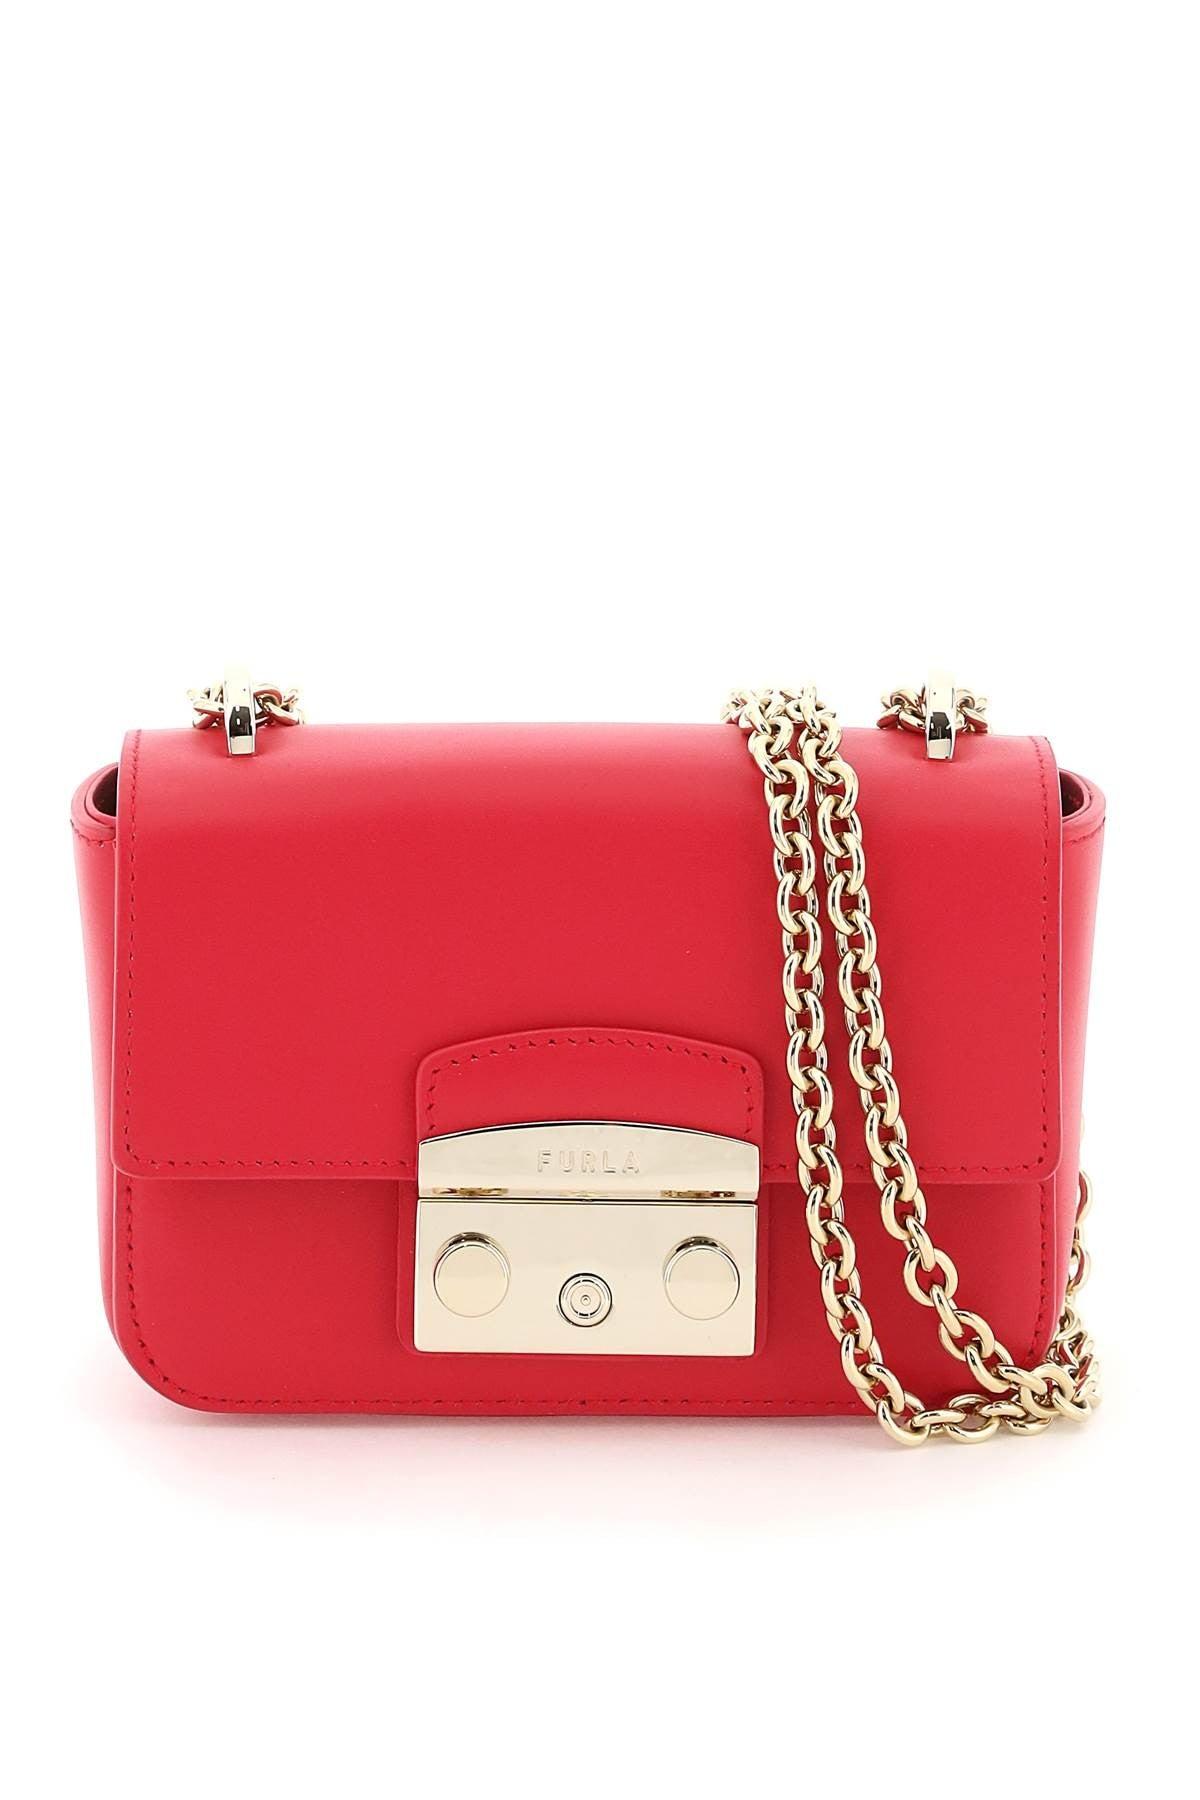 Furla Metropolis Mini Shoulder Bag in Red | Lyst